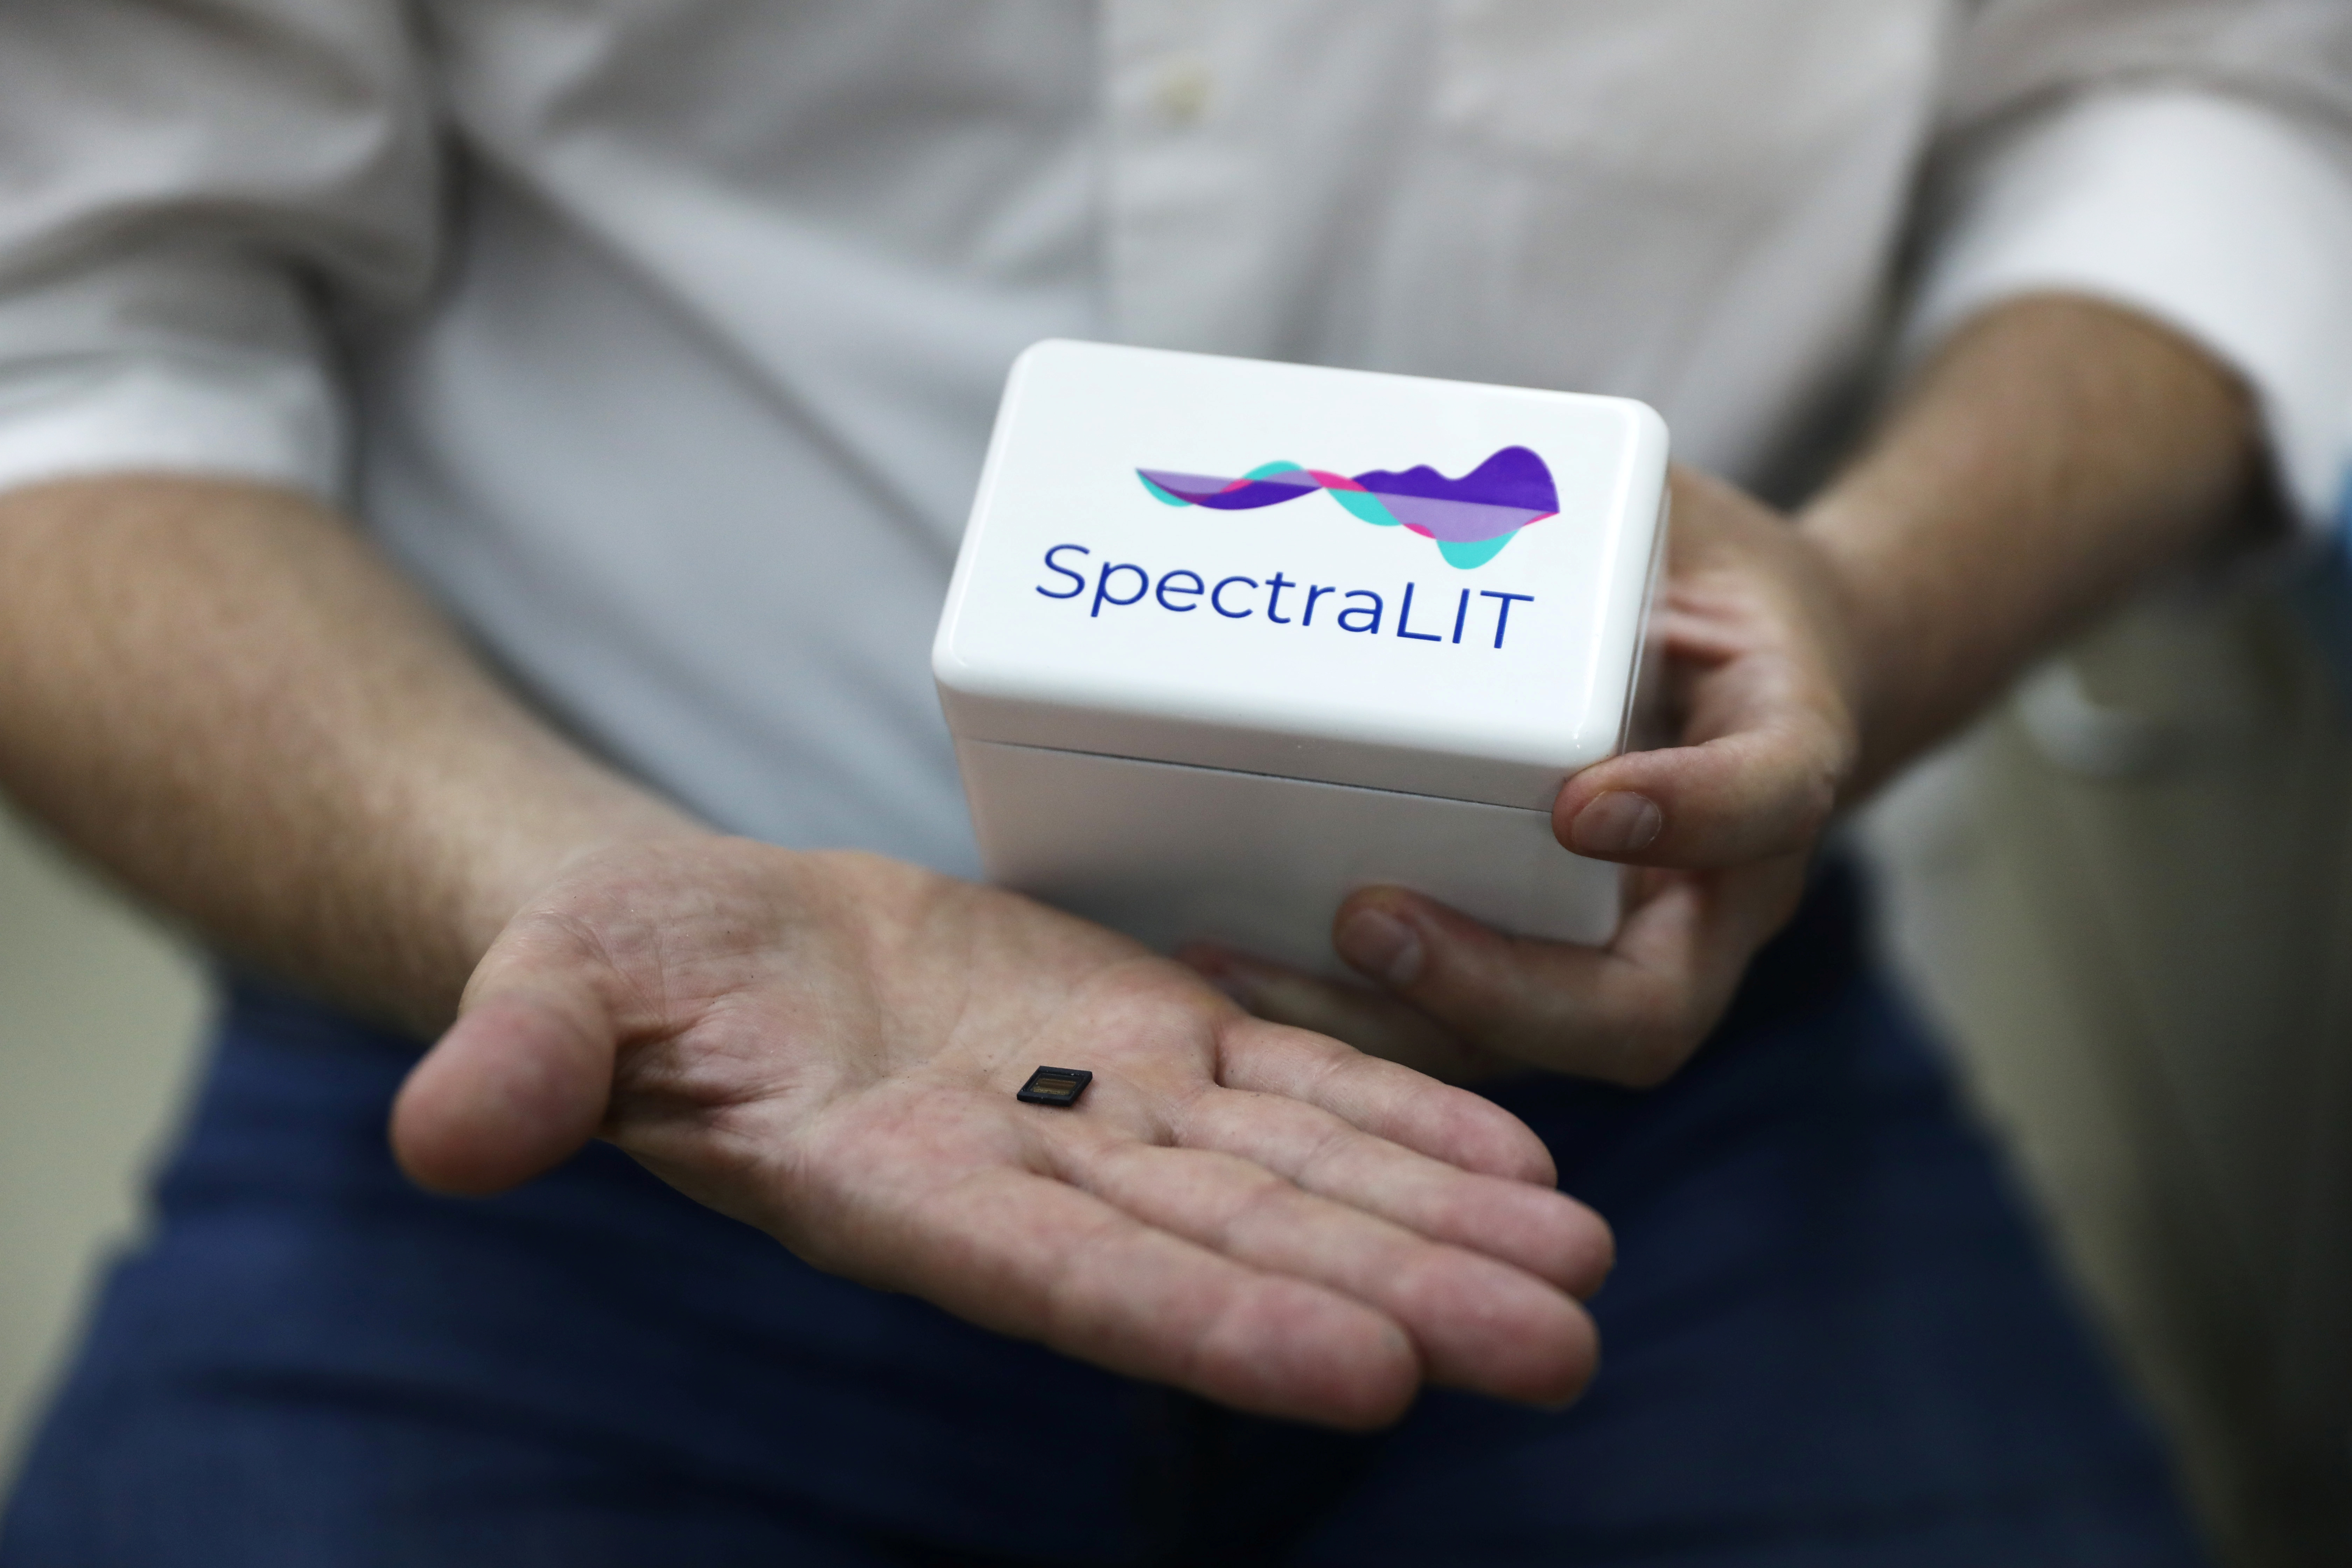 El aparato, SpectraLIT, tiene el tamaño de un plato de café y es alimentado por USB (Reuters)